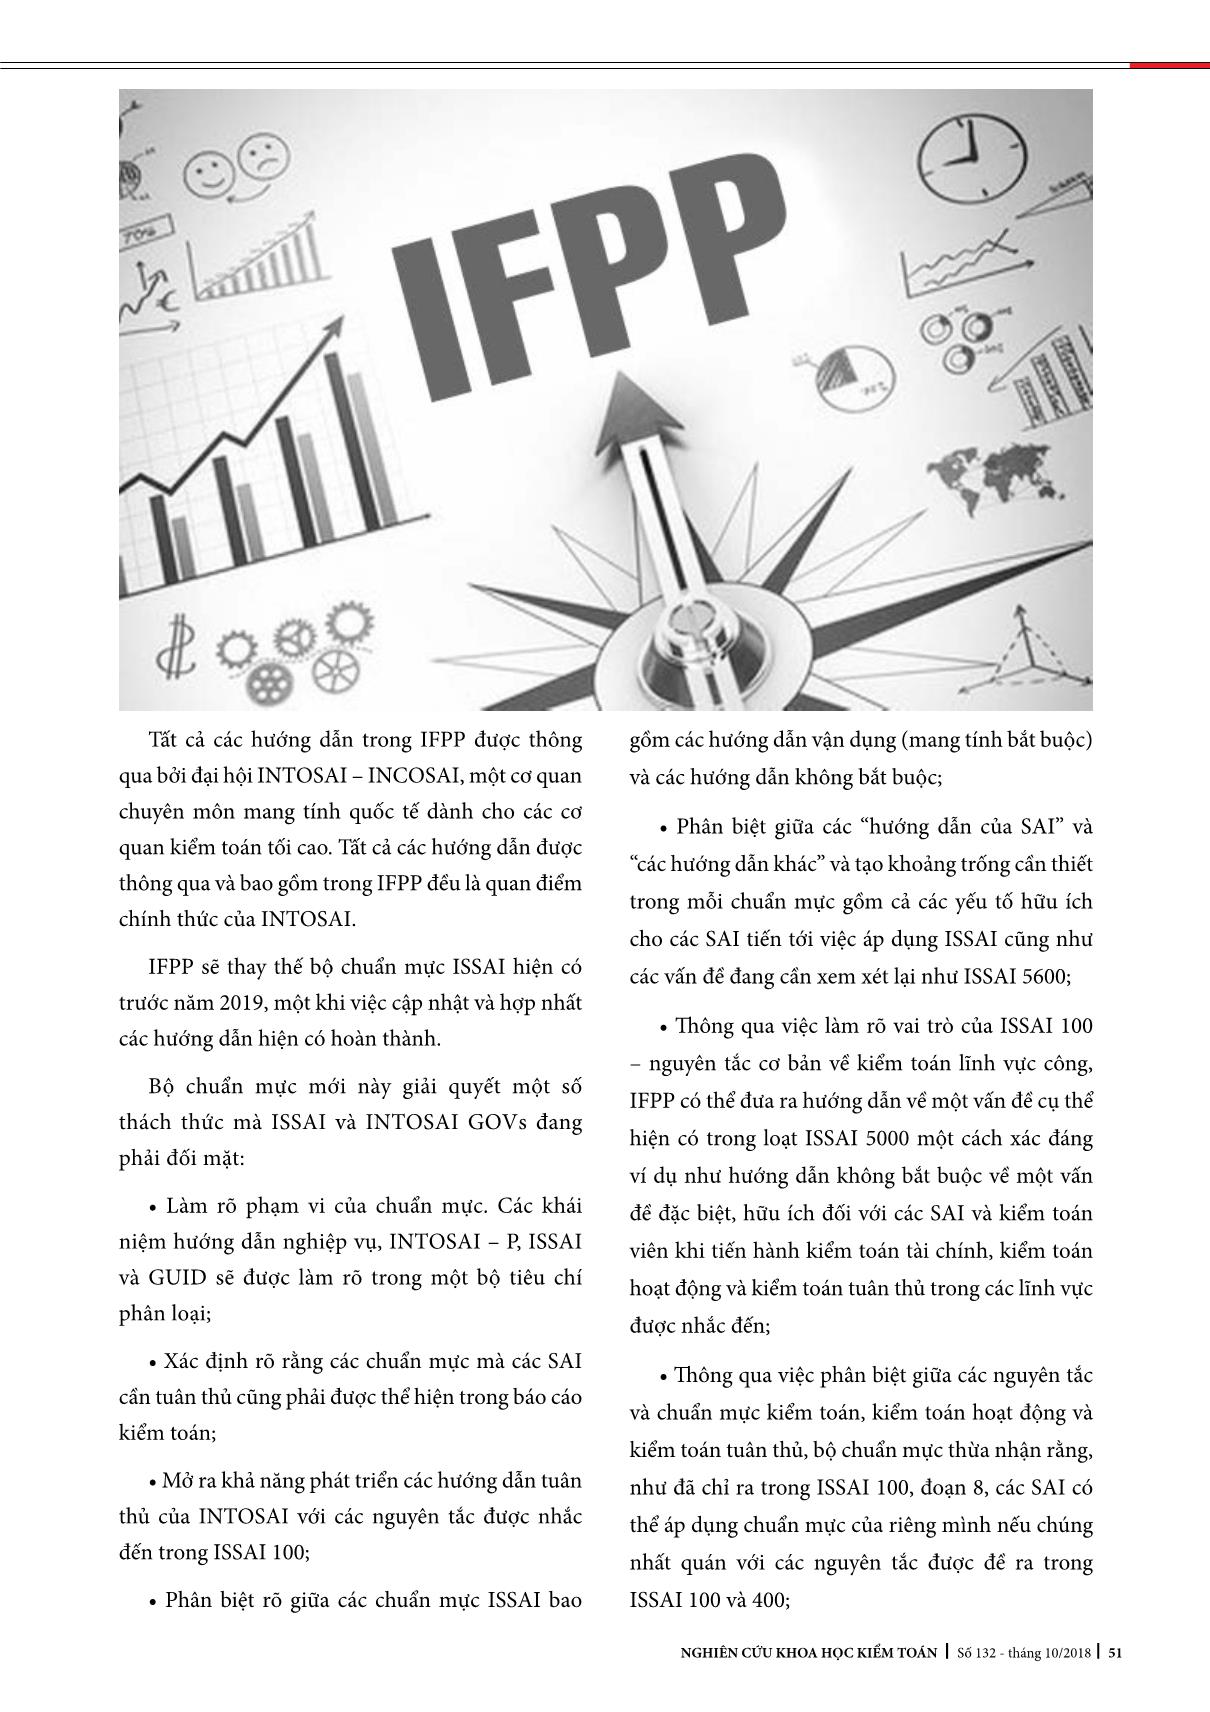 Tien tới trien kHai áP dung IFPP trong các cơ Quan kieM toán toi cao trang 2